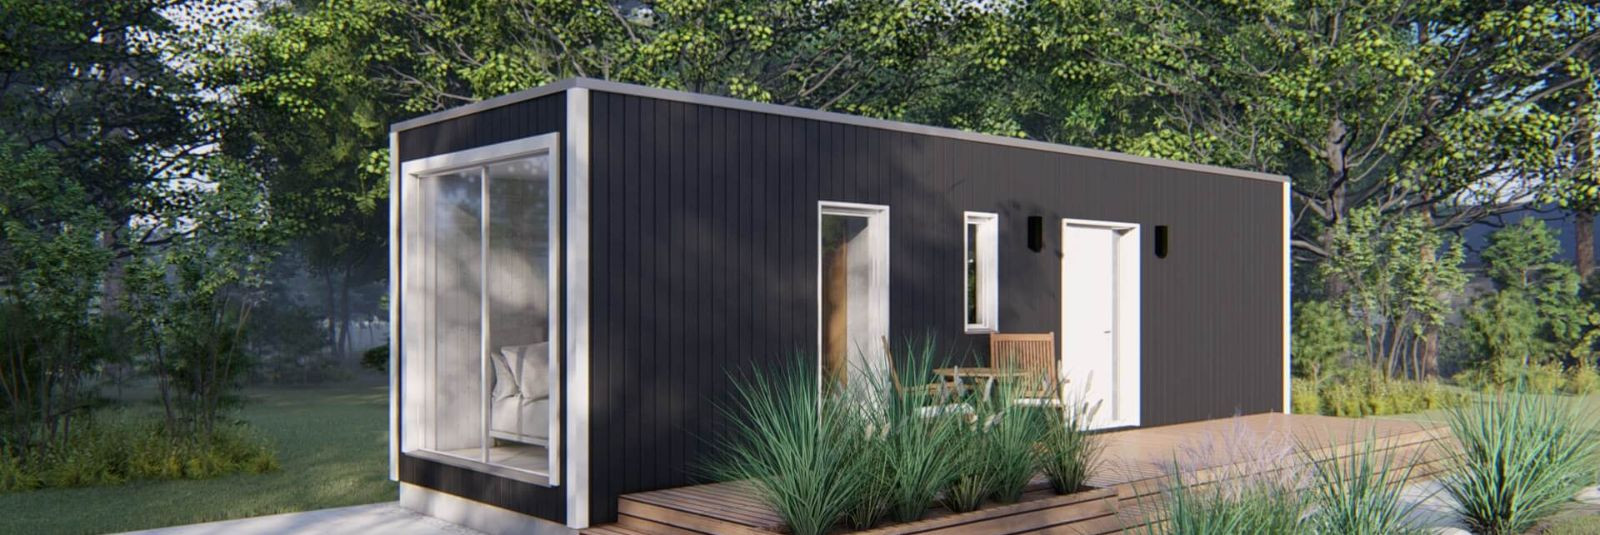 Oleme uhked esitleda meie uut Modern Modular moodulmajade sarja, mis on loodud pakkumaks teile väikemaja, mis ületab tavapäraste aiamajade piirid, pakkudes sama